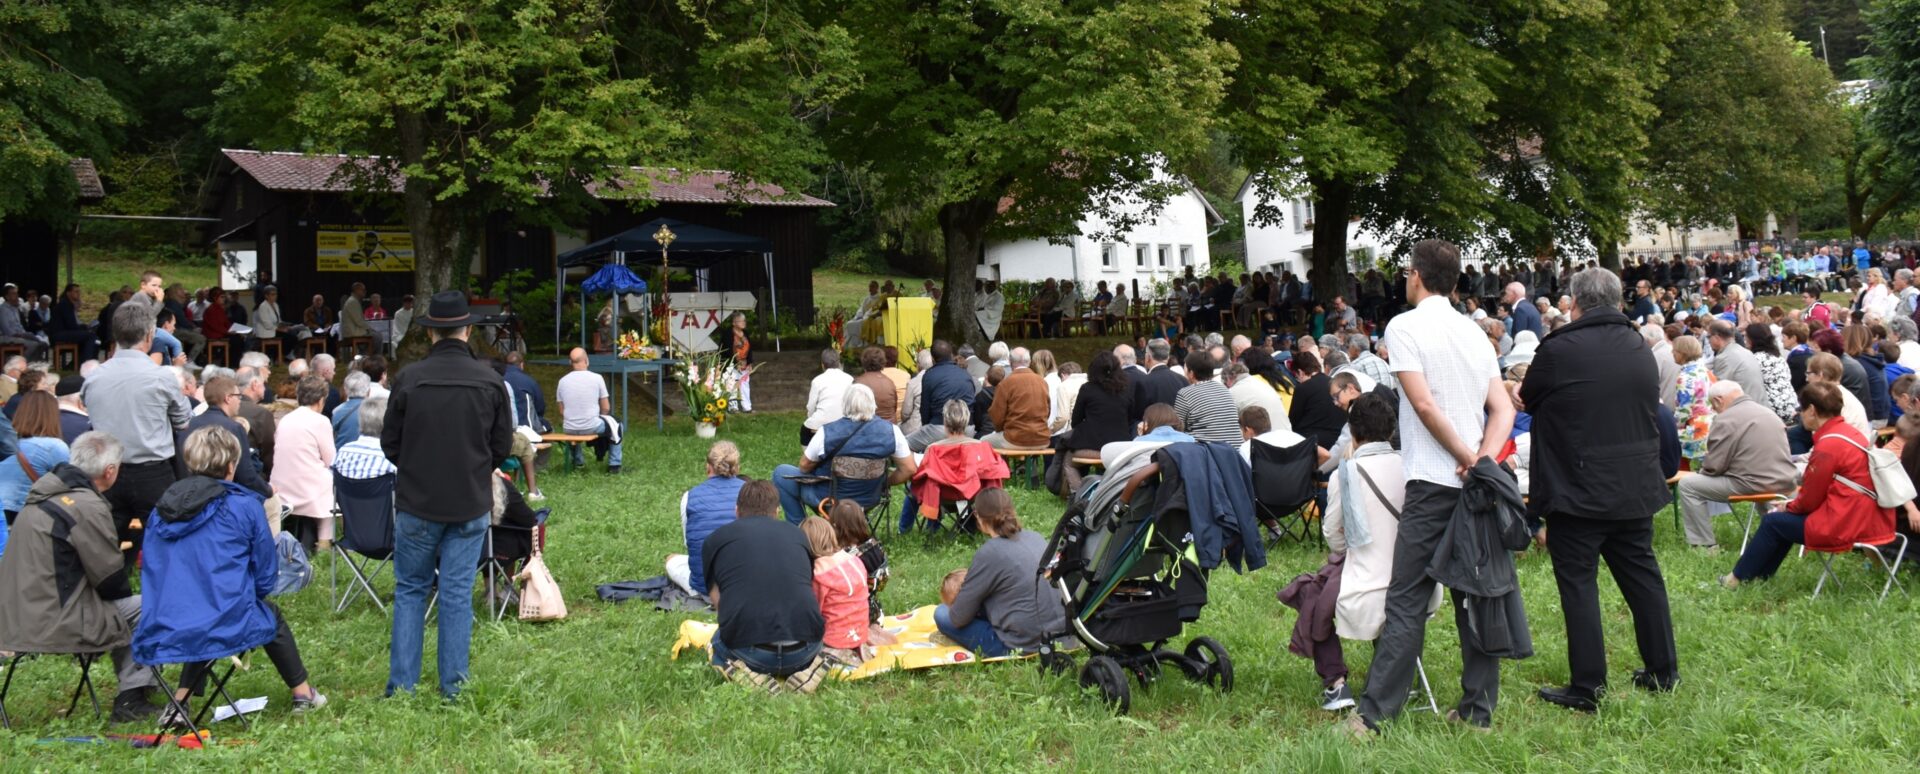 Les Festival des familles, le 15 août 2019, à la chapelle de Lorette, à Porrentruy | © UP Les Sources